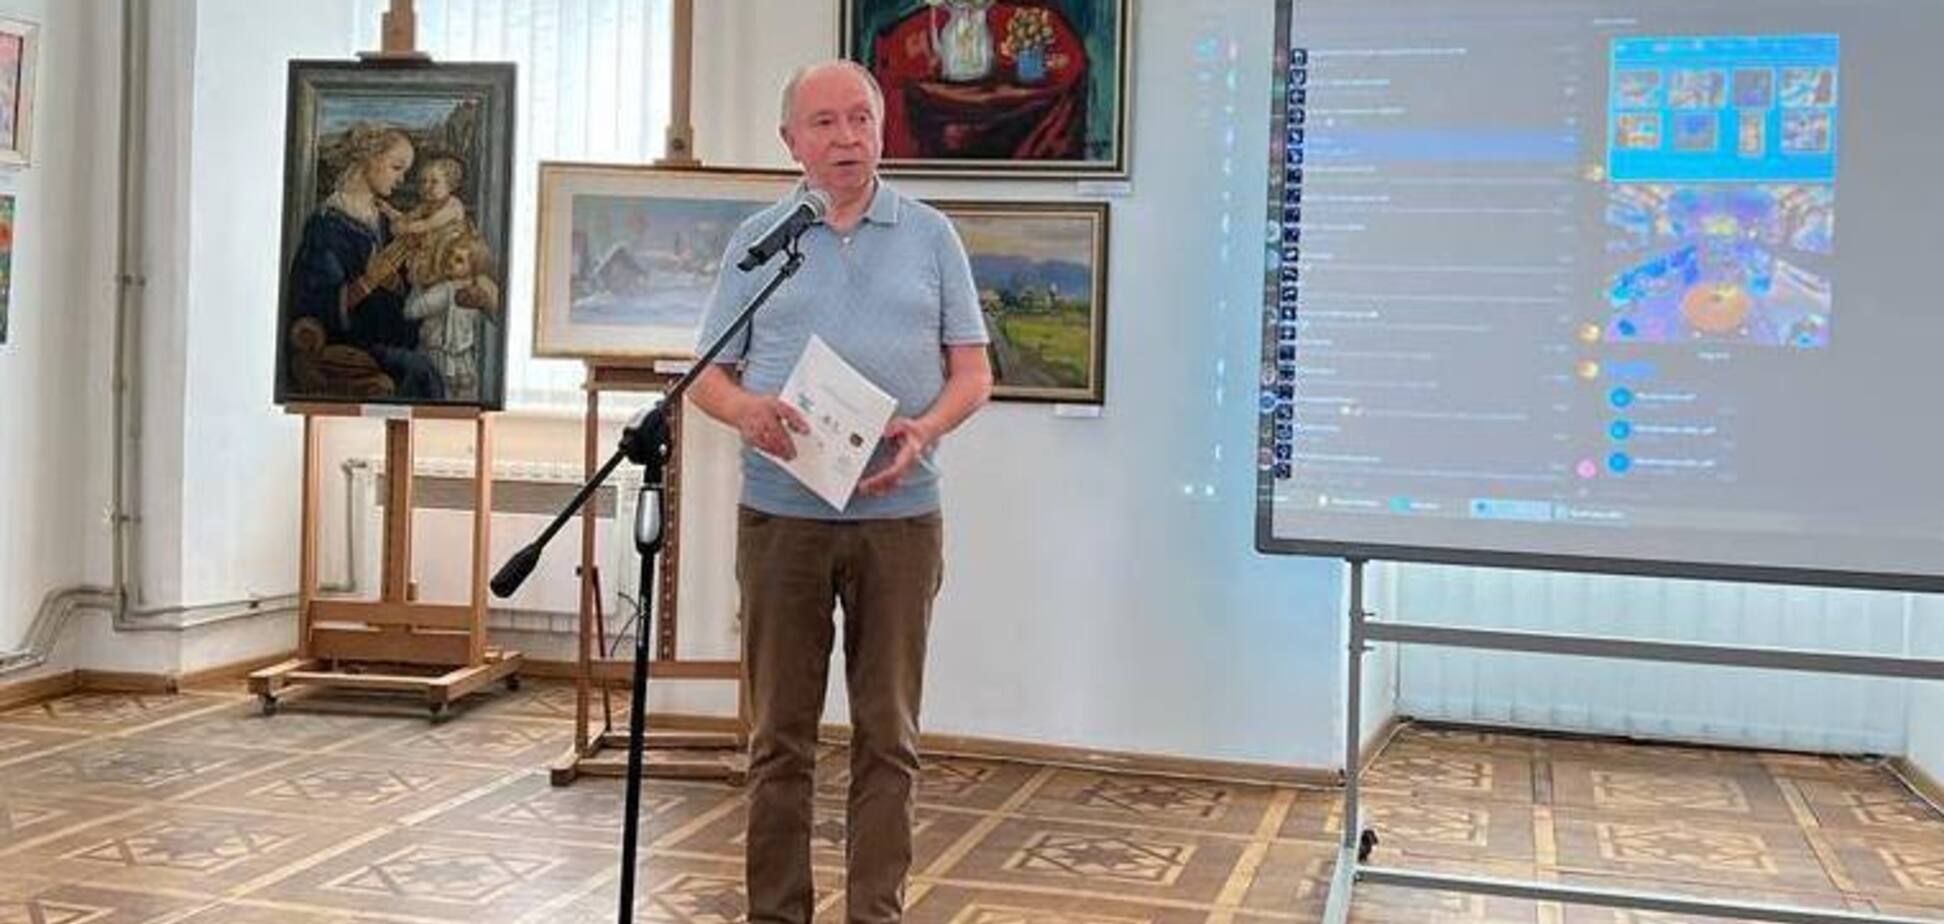 Президент МАН виставив на продаж колекцію картин для створення Музею науки для школярів. Фото